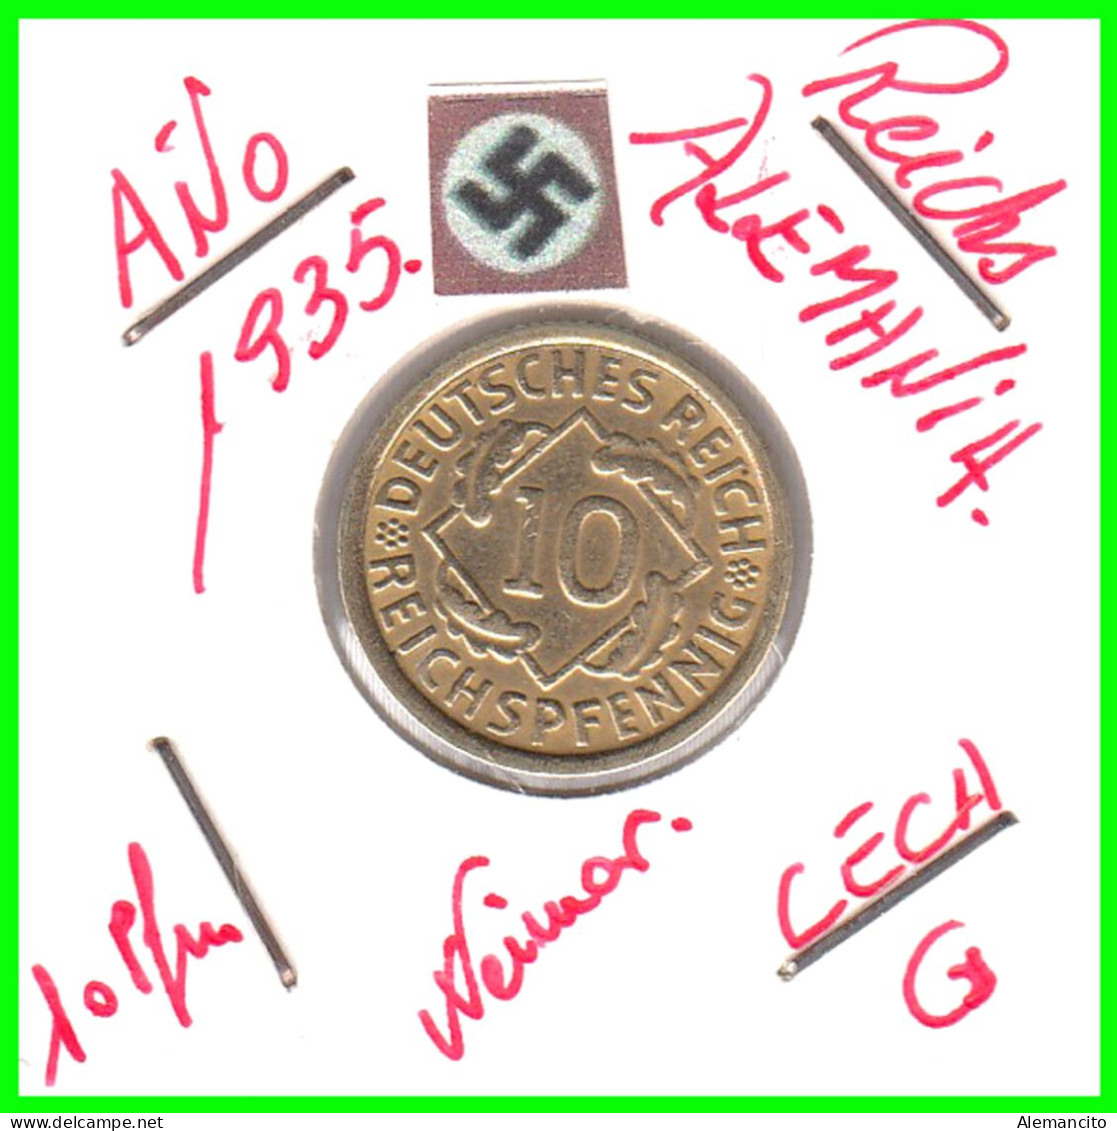 GERMANY REPÚBLICA DE WEIMAR 10 PFENNIG DE PENSIÓN ( 1935 CECA - D ) MONEDA DEL AÑO 1923-1936 (RENTENPFENNIG KM # 32 - 10 Renten- & 10 Reichspfennig